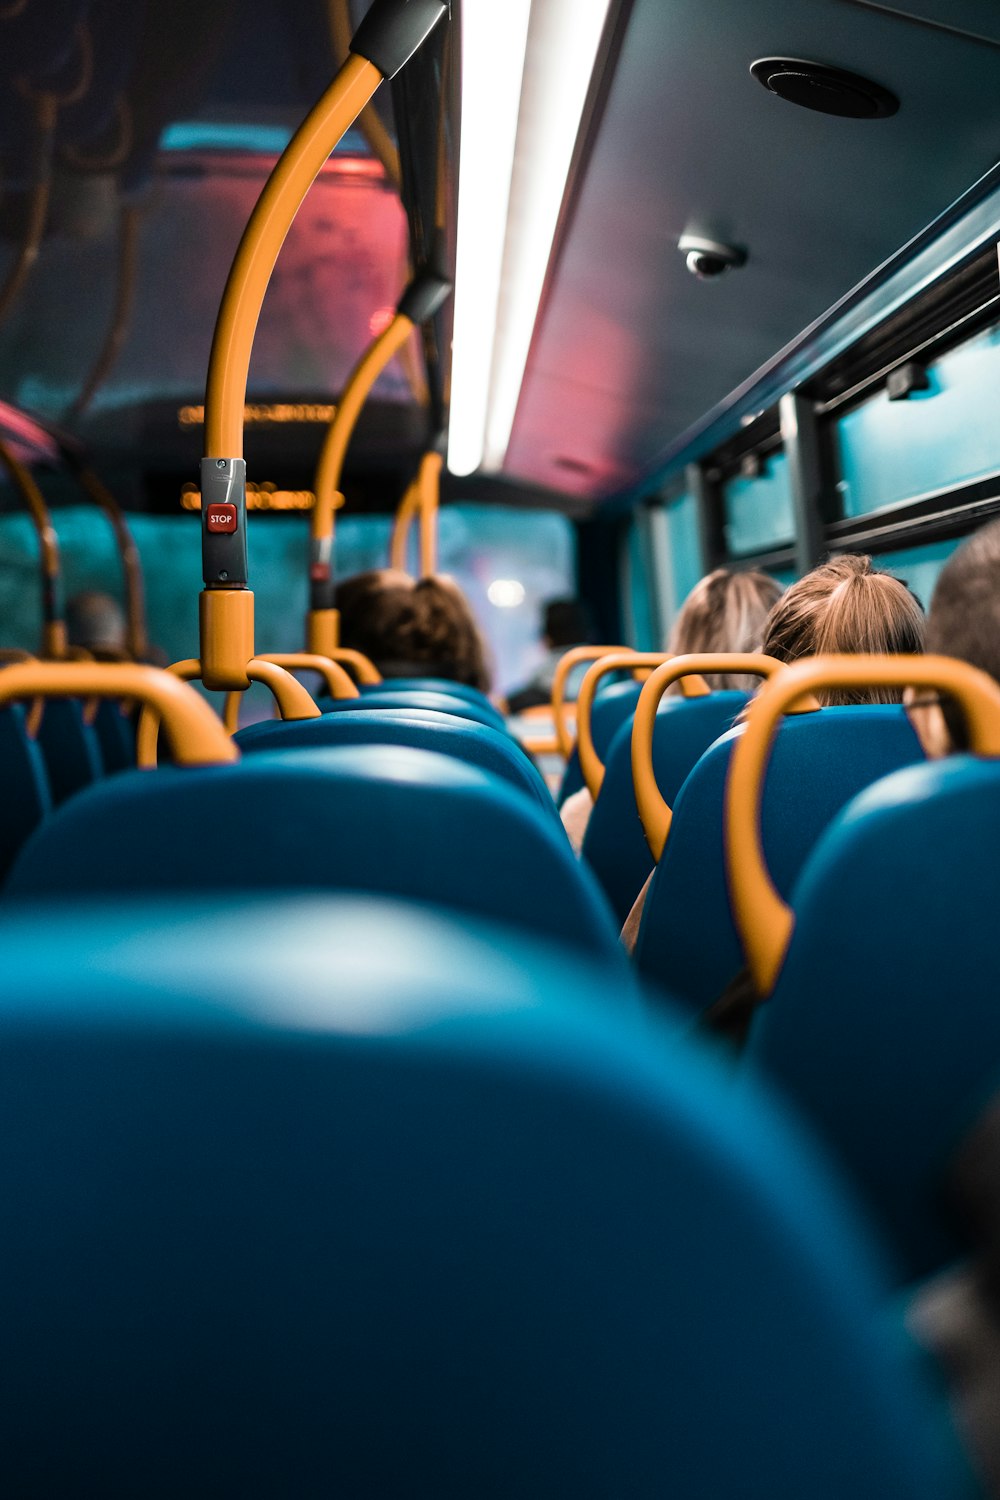 personnes assises sur des sièges d’autobus bleus et jaunes